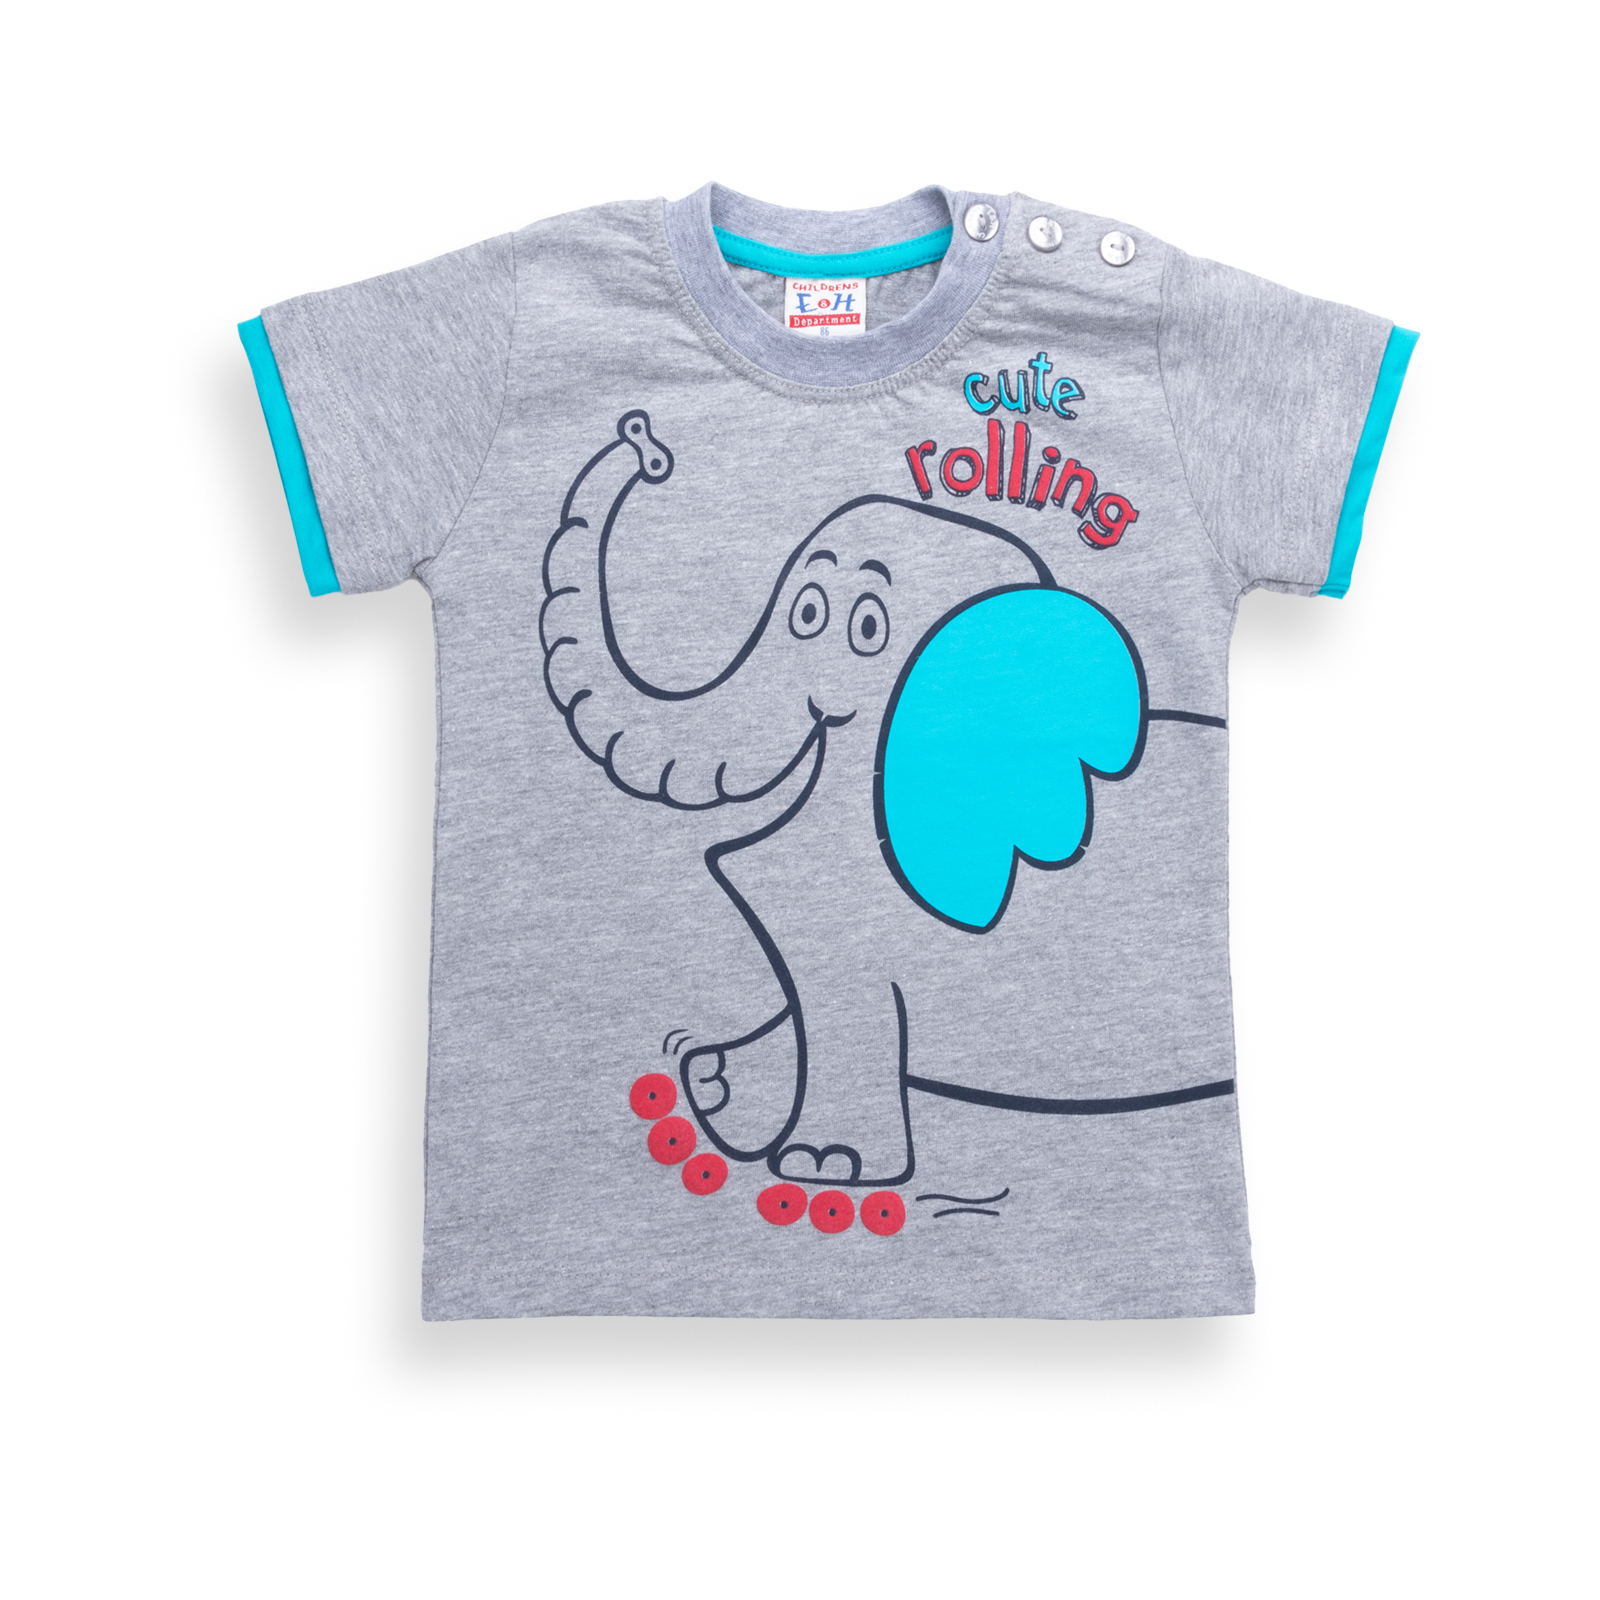 Набор детской одежды Breeze со слоником (6199-86B-blue) изображение 2